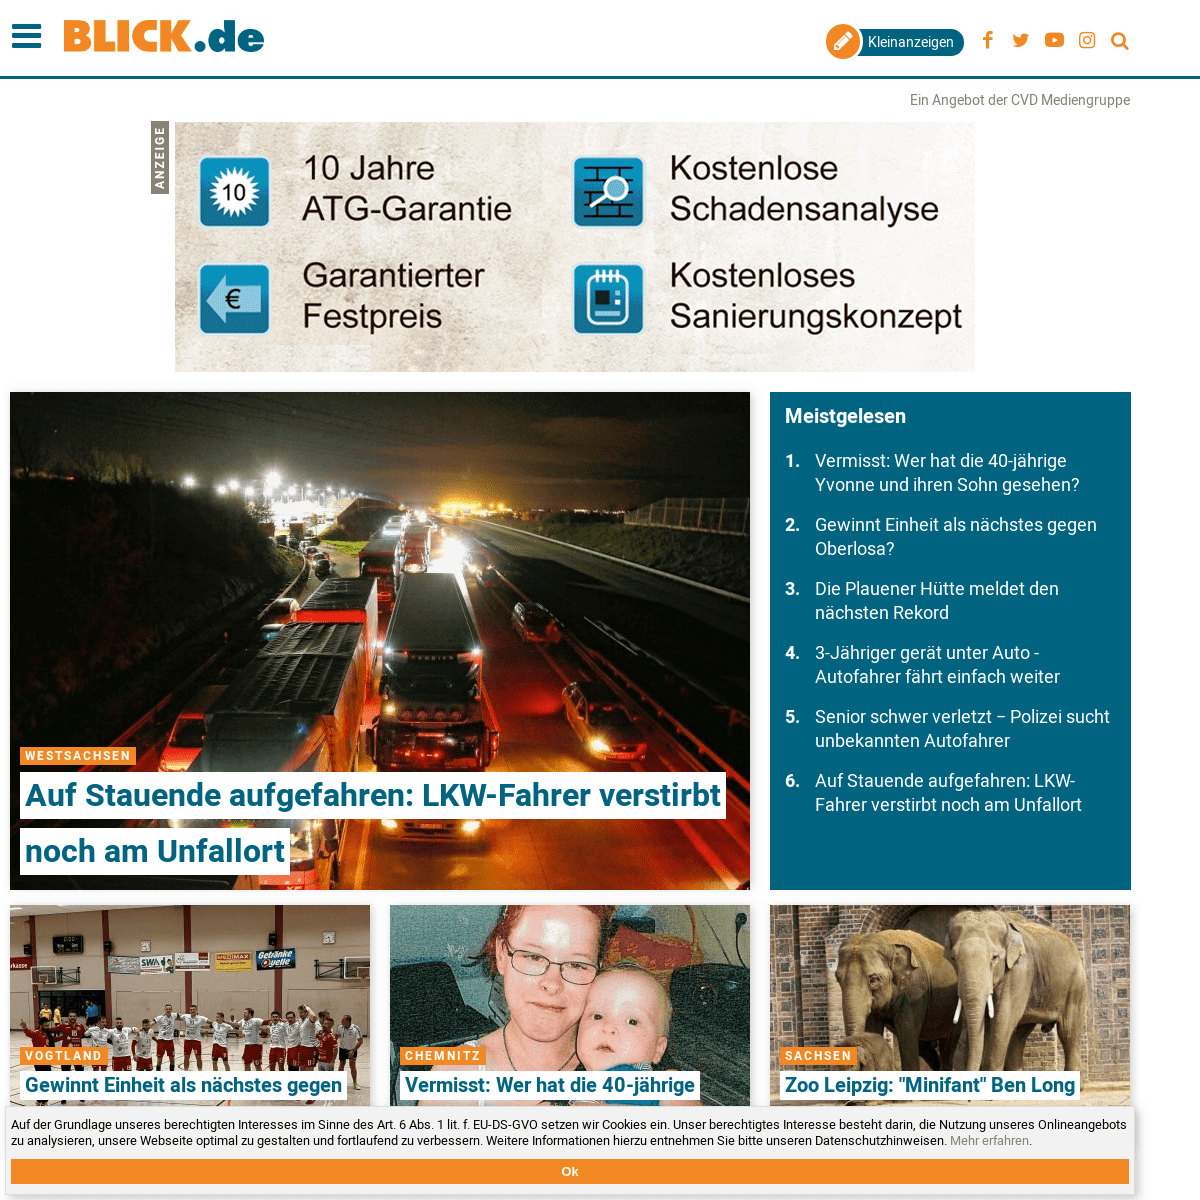 blick.de - News, Events und Lifestyle | Blick